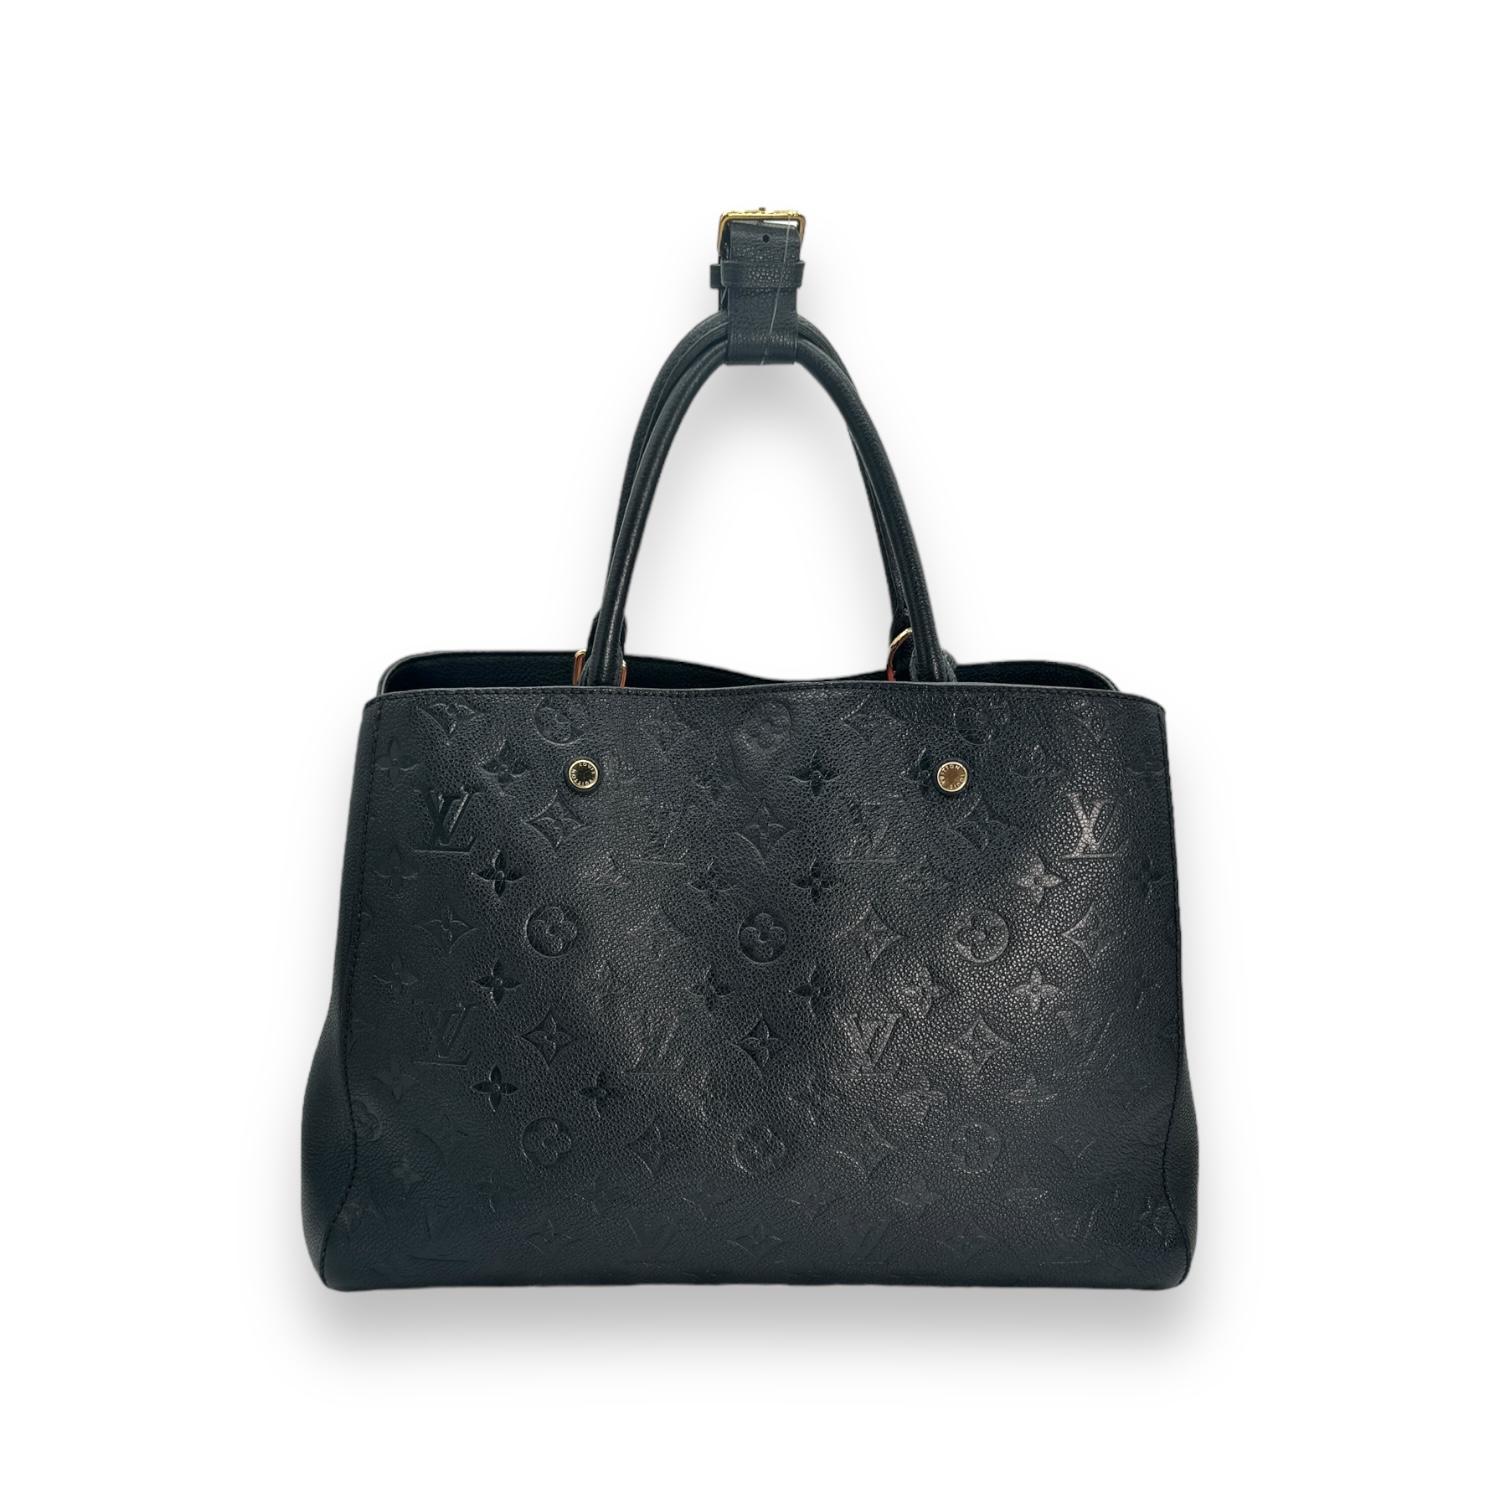 Diese schicke Handtasche ist aus schwarzem Leder mit Monogrammprägung von Louis Vuitton gefertigt. Die Handtasche hat gerollte Ledergriffe mit goldfarbenen Messinggliedern und eine breite, offene Klappe, die den Blick auf ein gestreiftes Stoffinnere